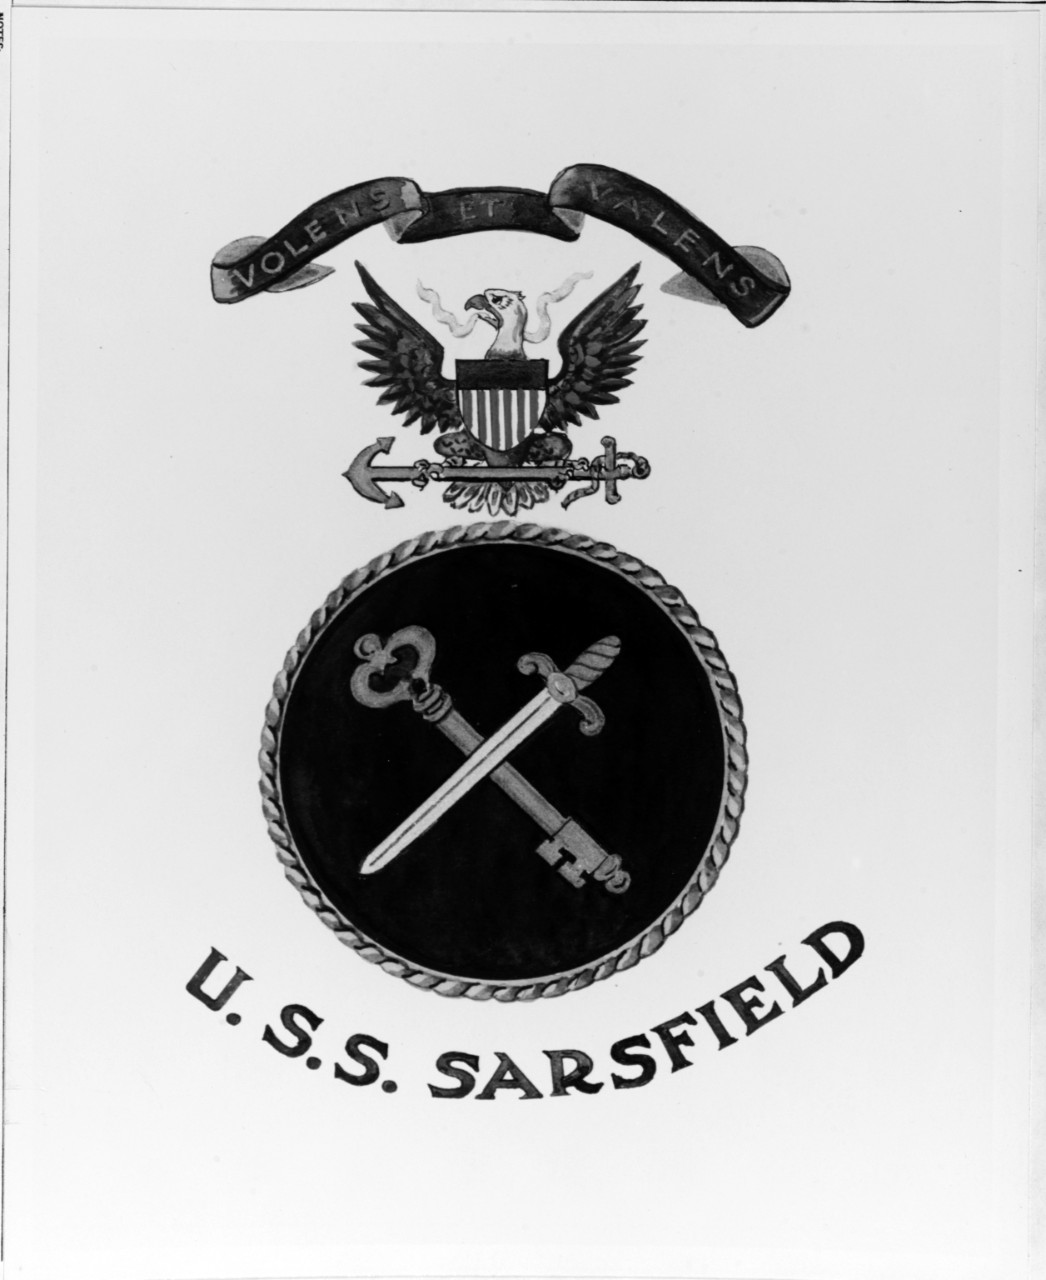 Insignia: USS SARSFIELD (DD-837)